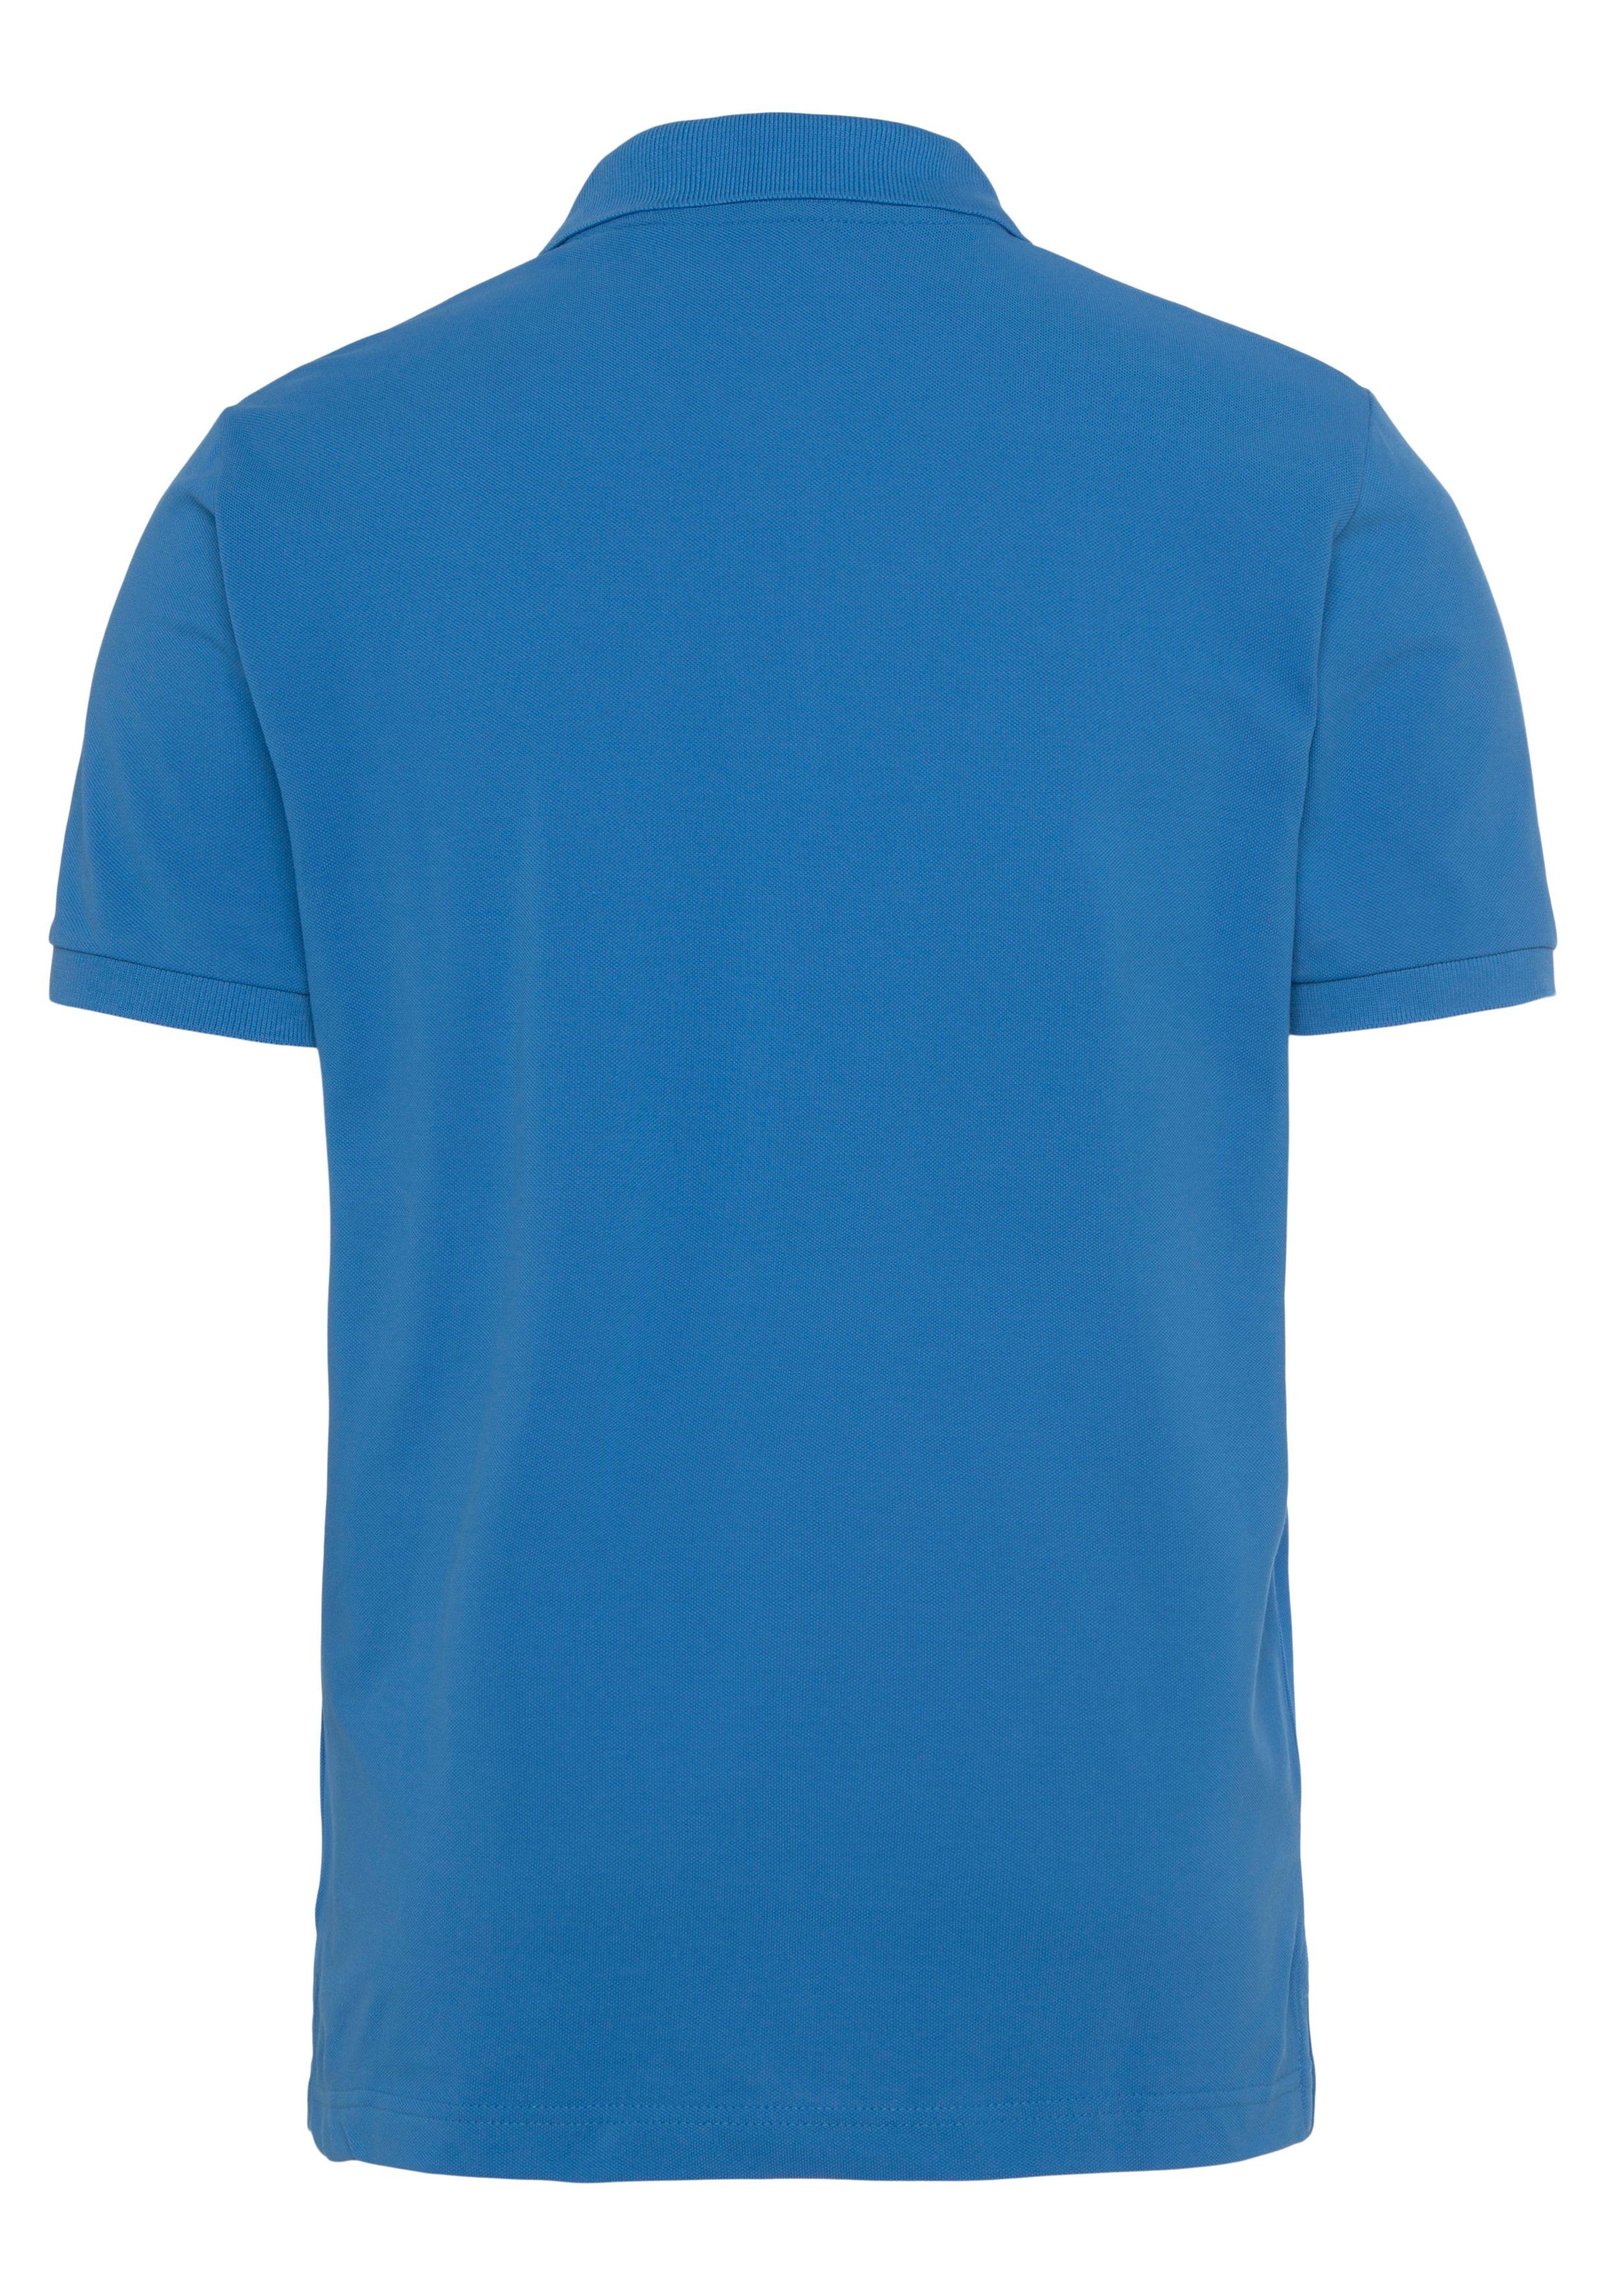 Regular Piqué-Polo Casual, RUGGER MD. Qualität day blue Premium KA Smart Fit, Shirt, Gant Poloshirt PIQUE